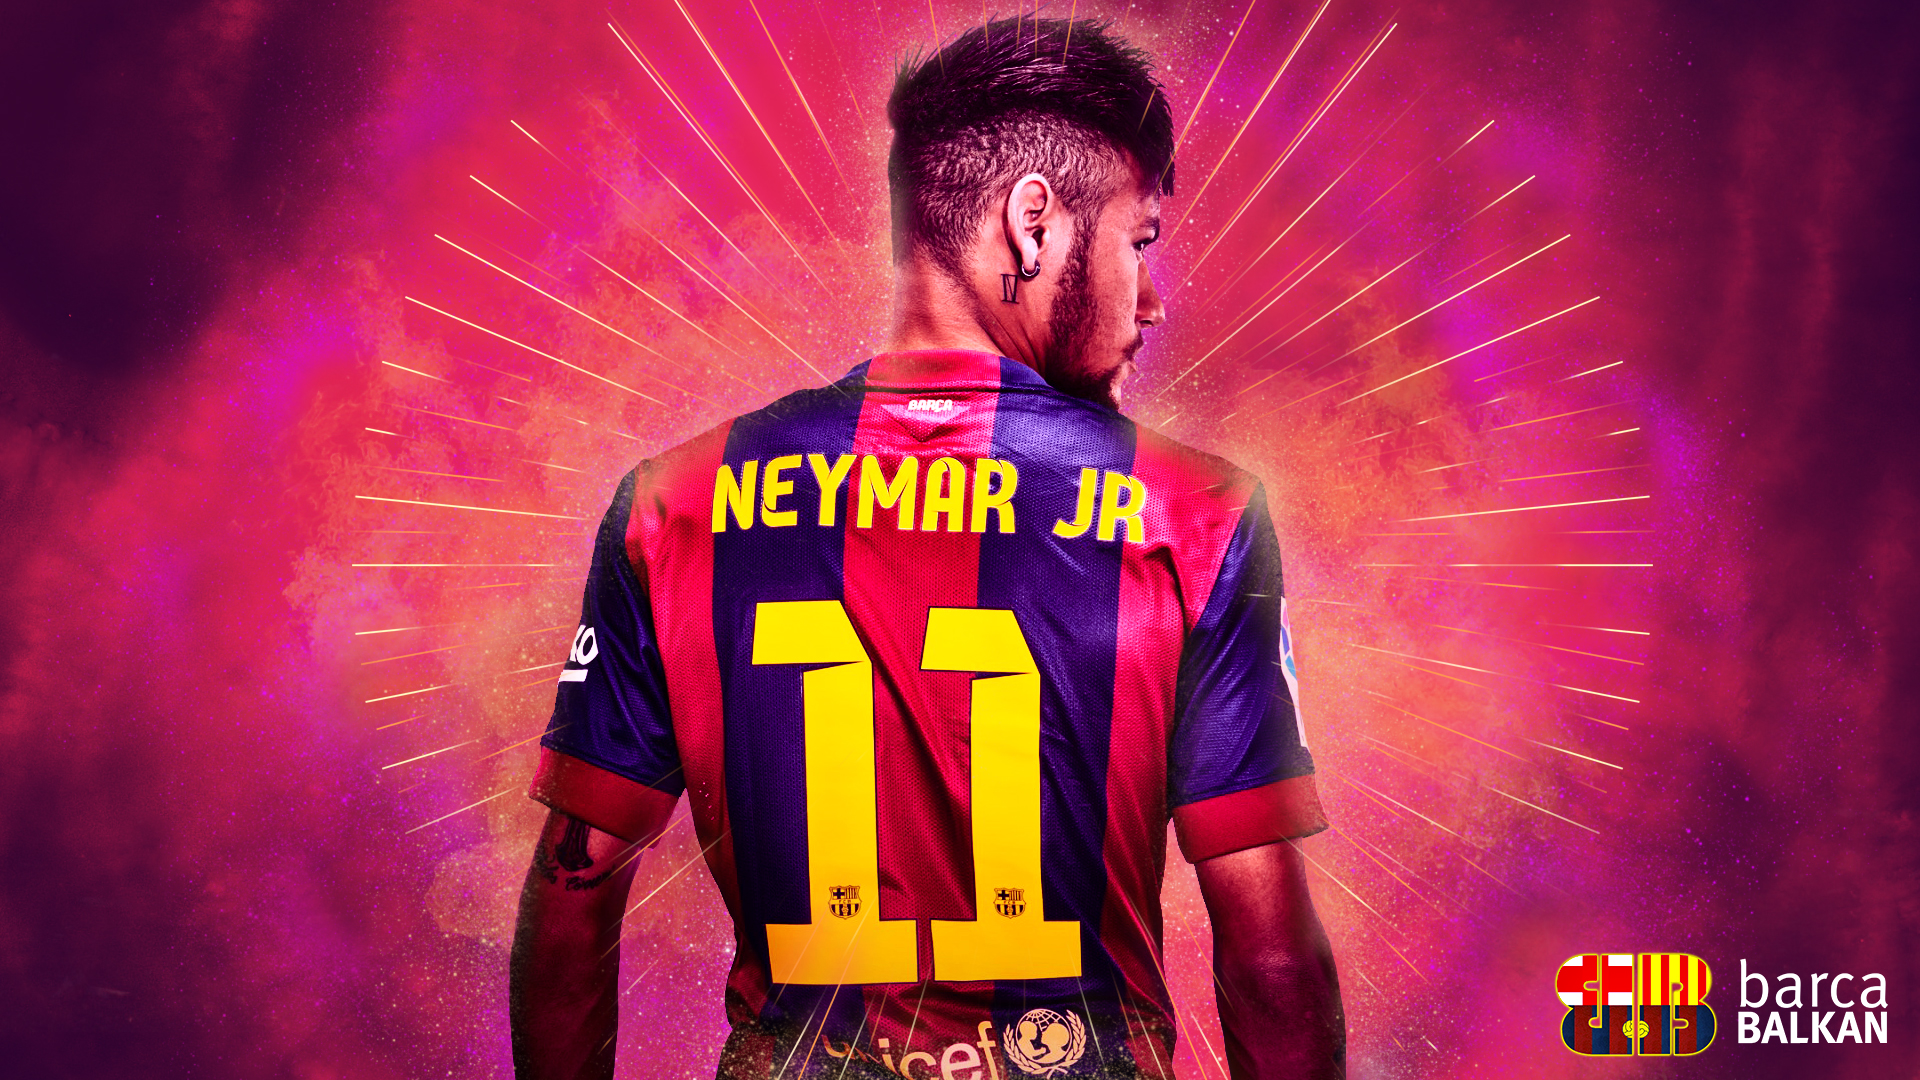 Neymar Wallpaper Pictures Image